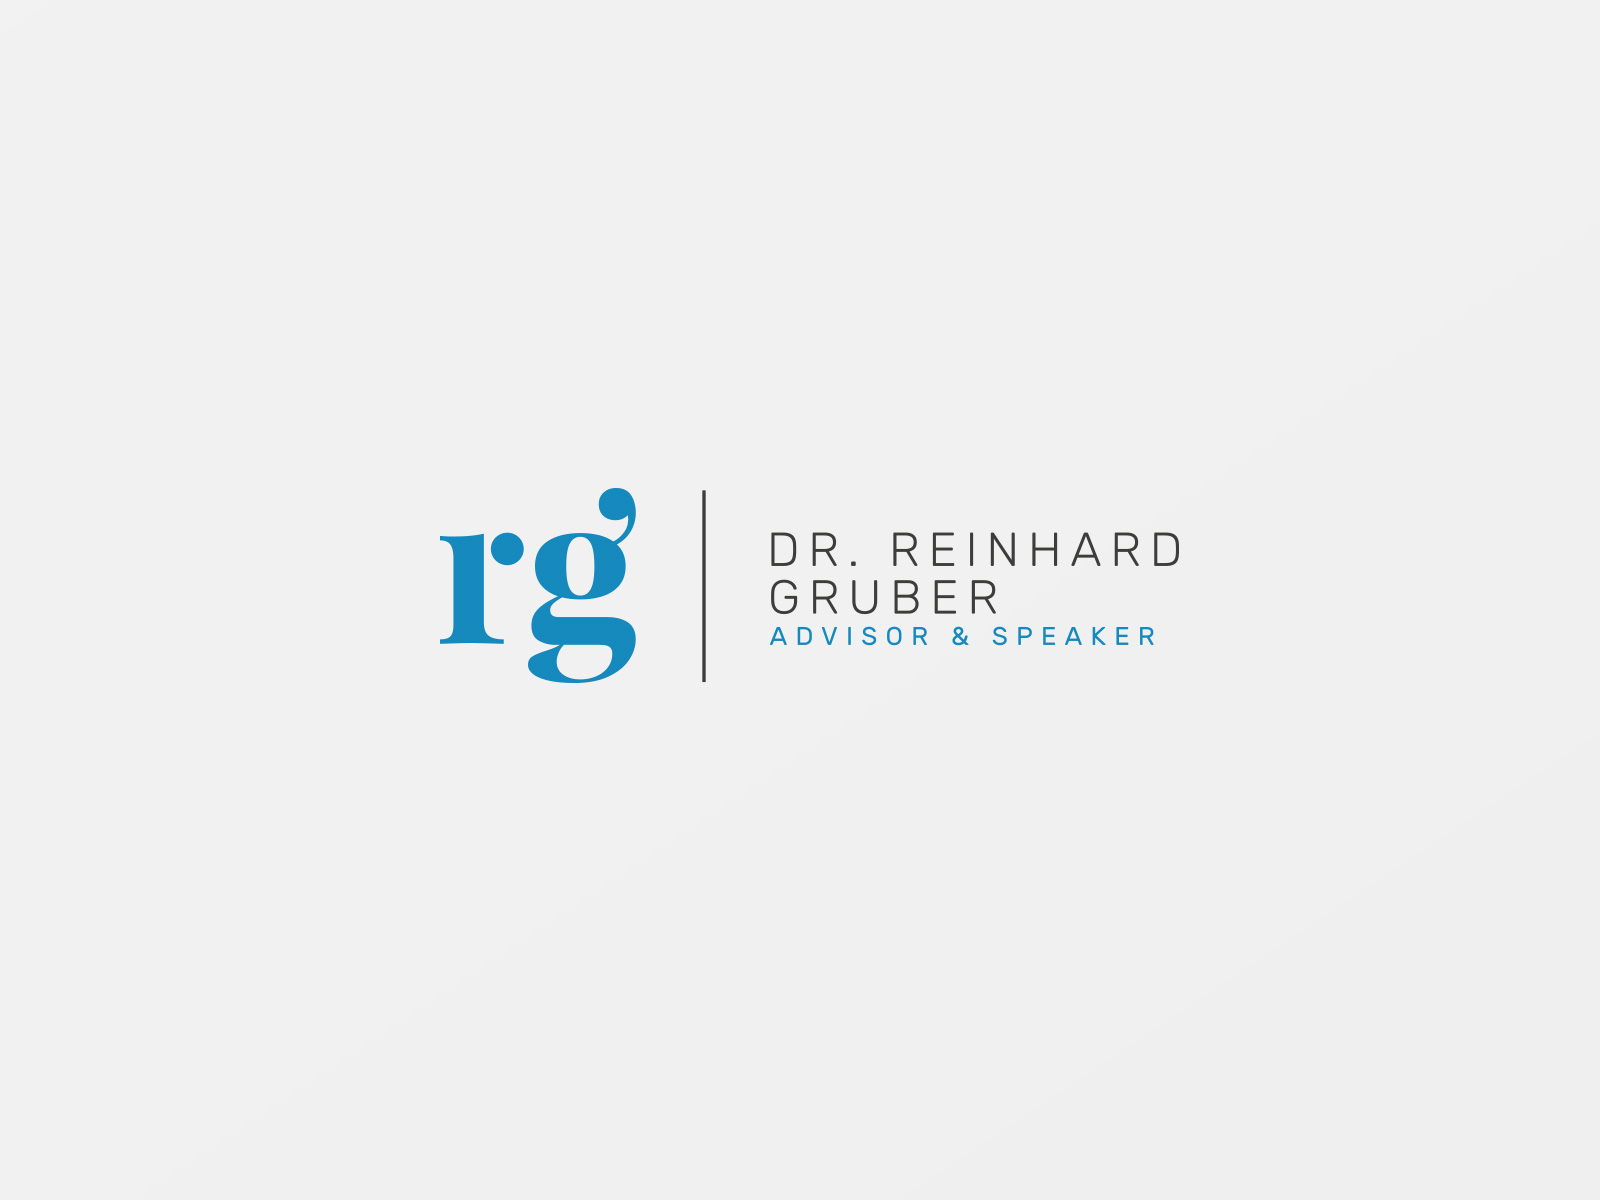 DDr. Reinhard Gruber Logo Design